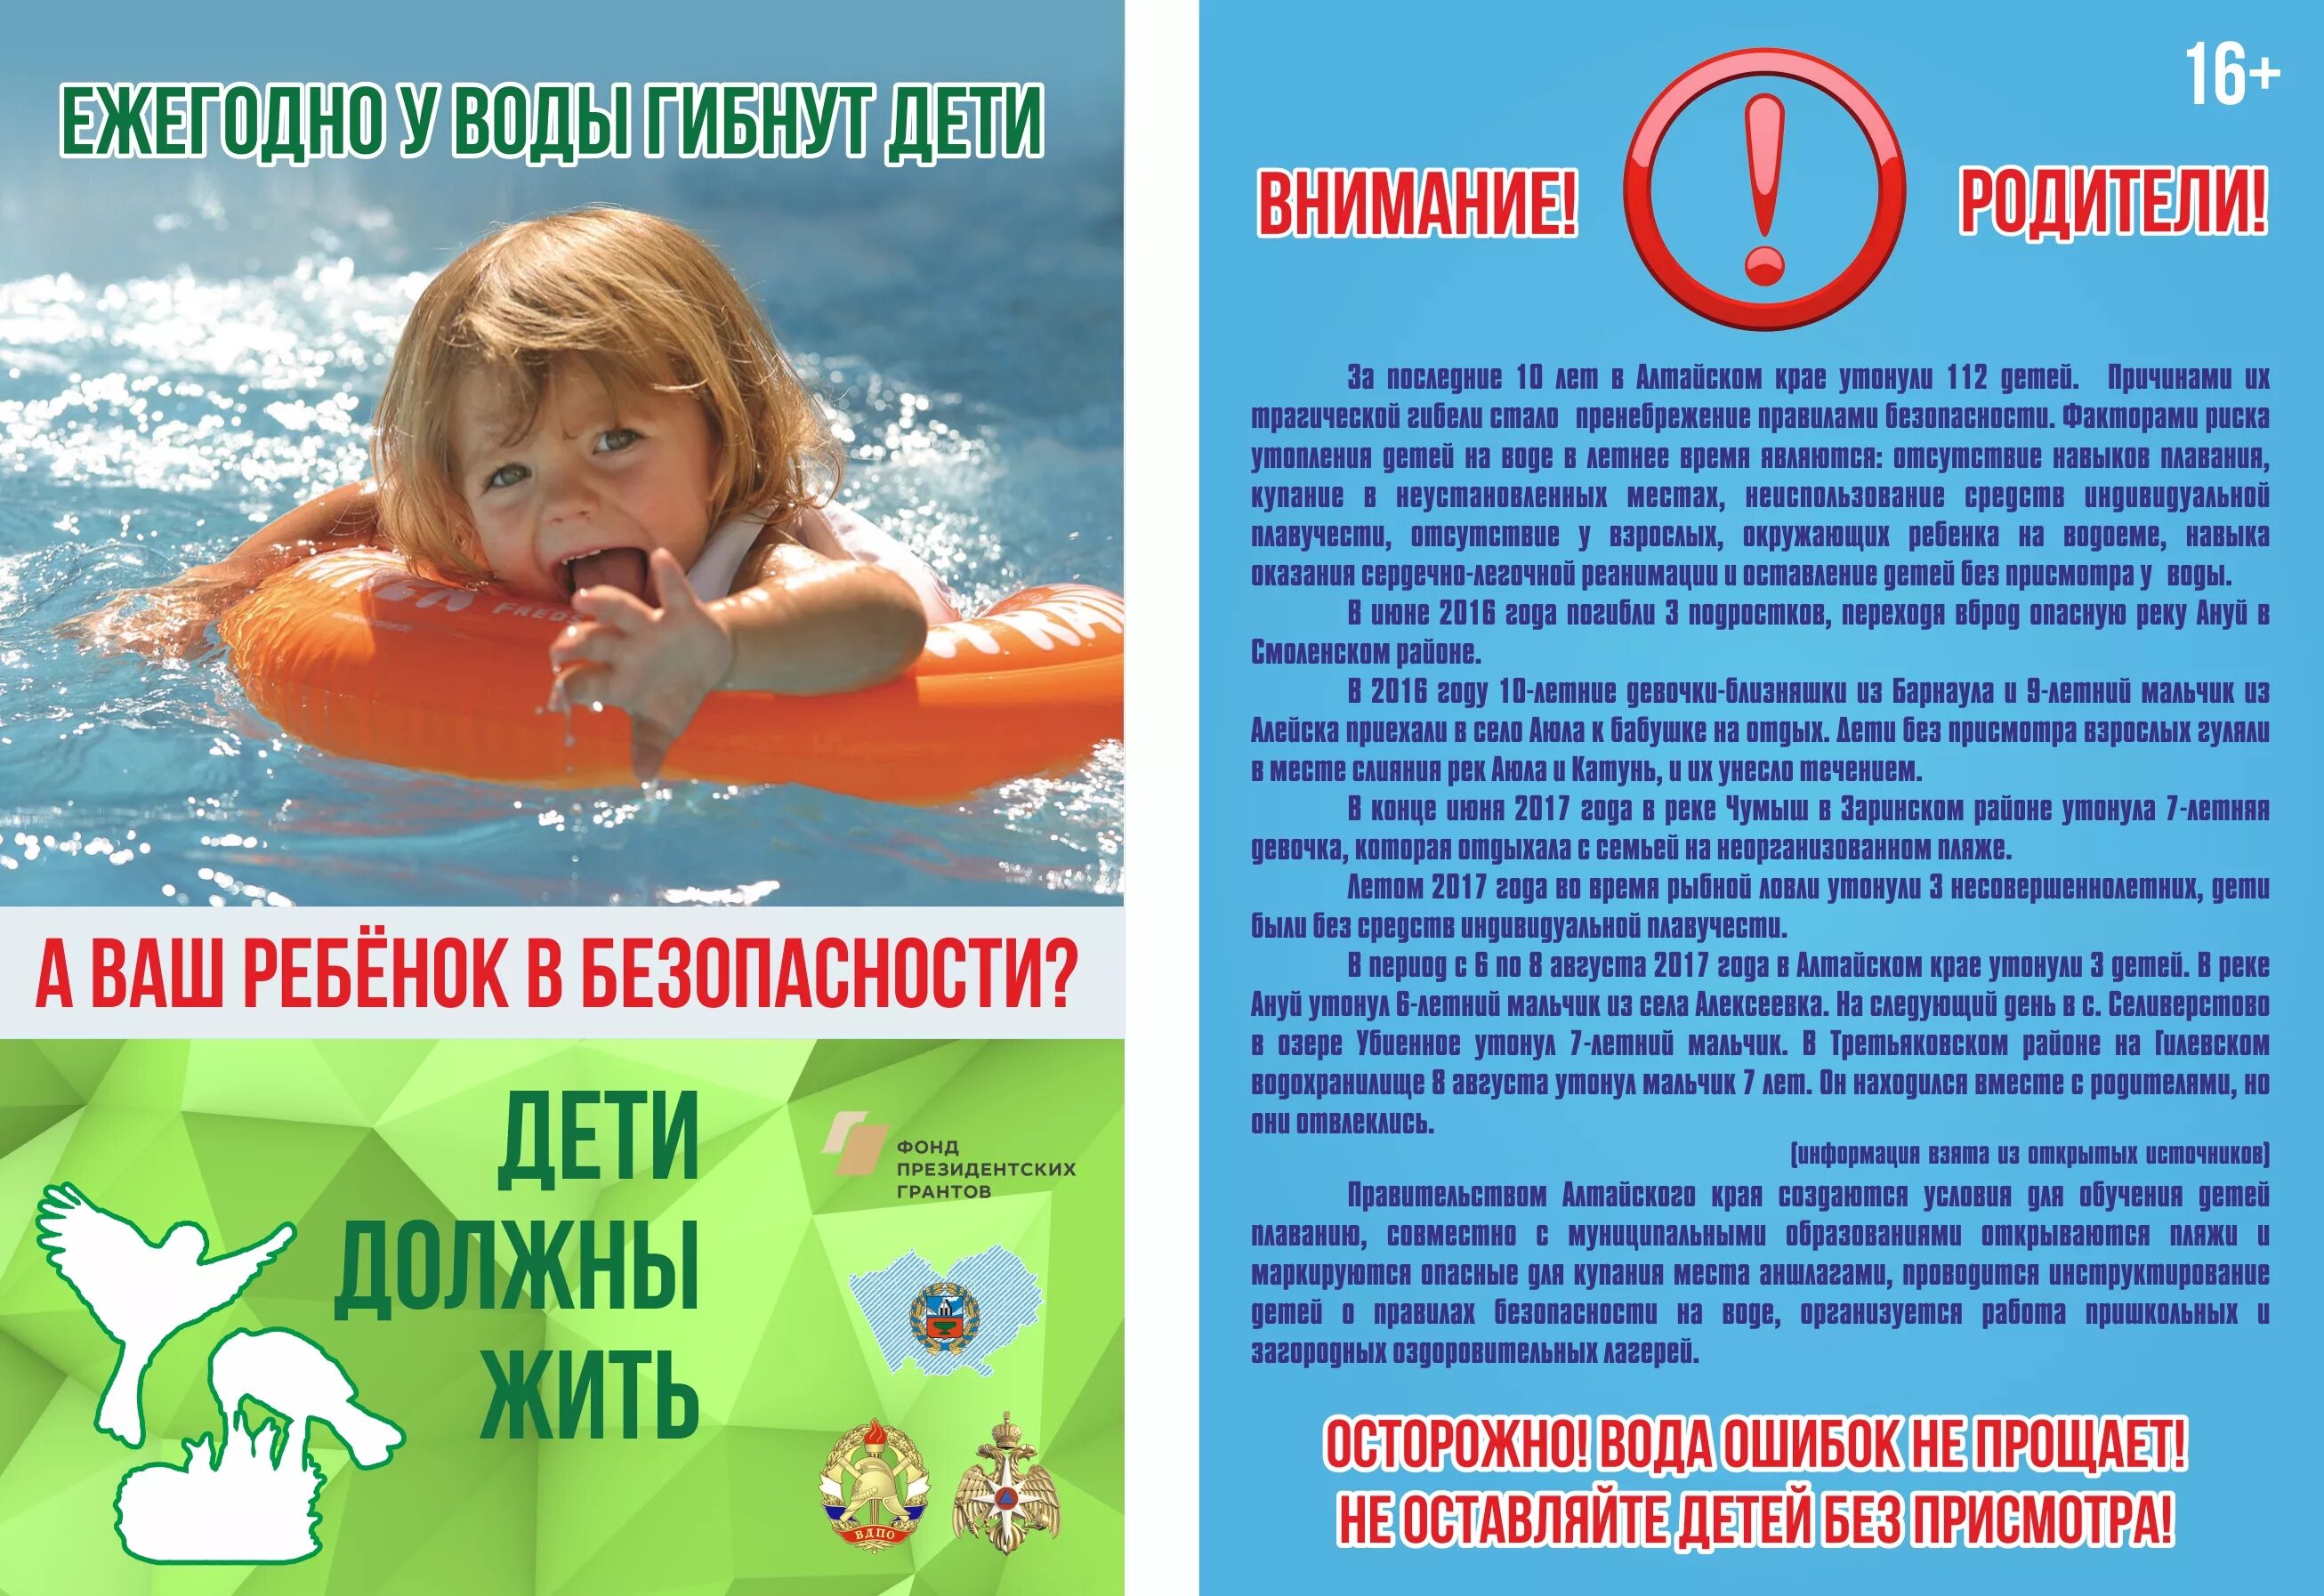 Обращение к воде. Безопасность на водоемах летом для детей. Безопасность на вордоемахдля детей. Безопасность на воде для детей. Безопасность детей на водоемах в летний период.